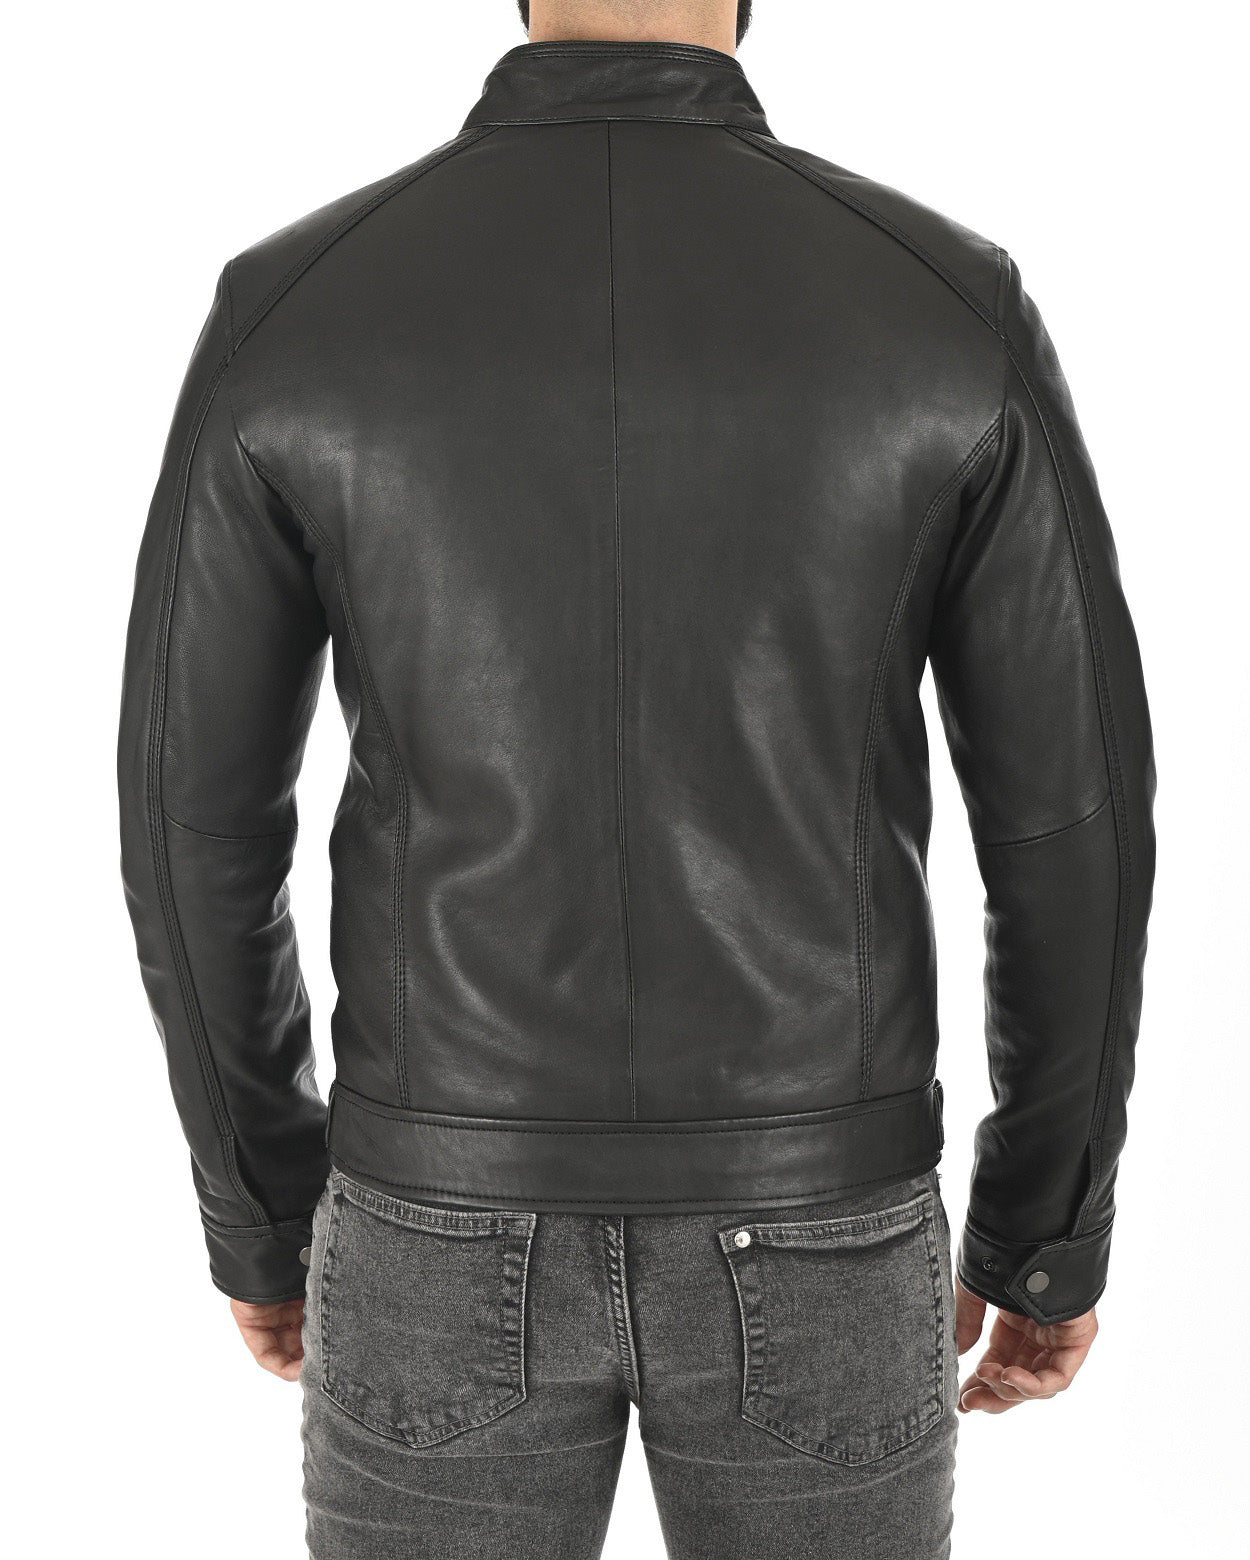 Men Lambskin Genuine Leather Jacket MJ129 SkinOutfit